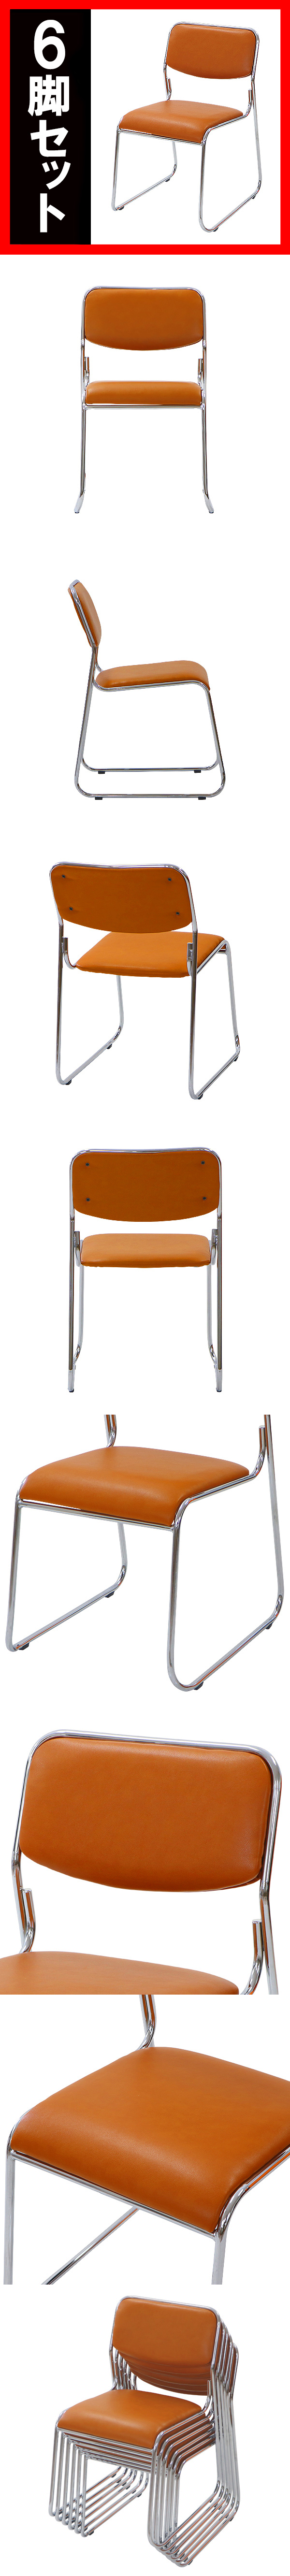 即納セール送料無料 6脚セット ミーティングチェア 会議イス 会議椅子 スタッキングチェア パイプチェア パイプイス パイプ椅子 キャメル パイプイス